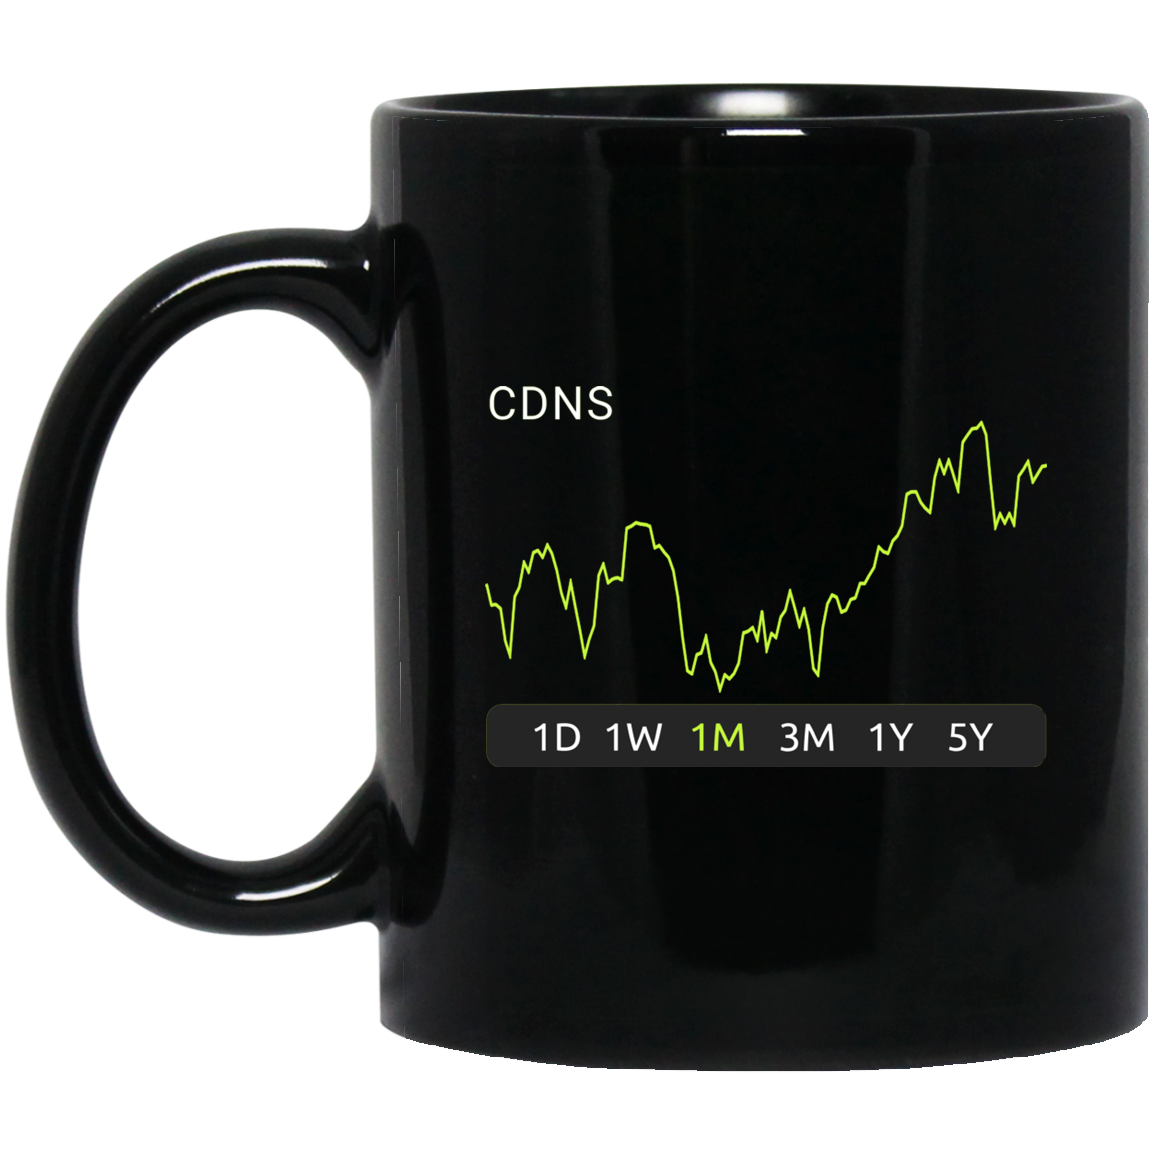 CDNS Stock 1m Mug